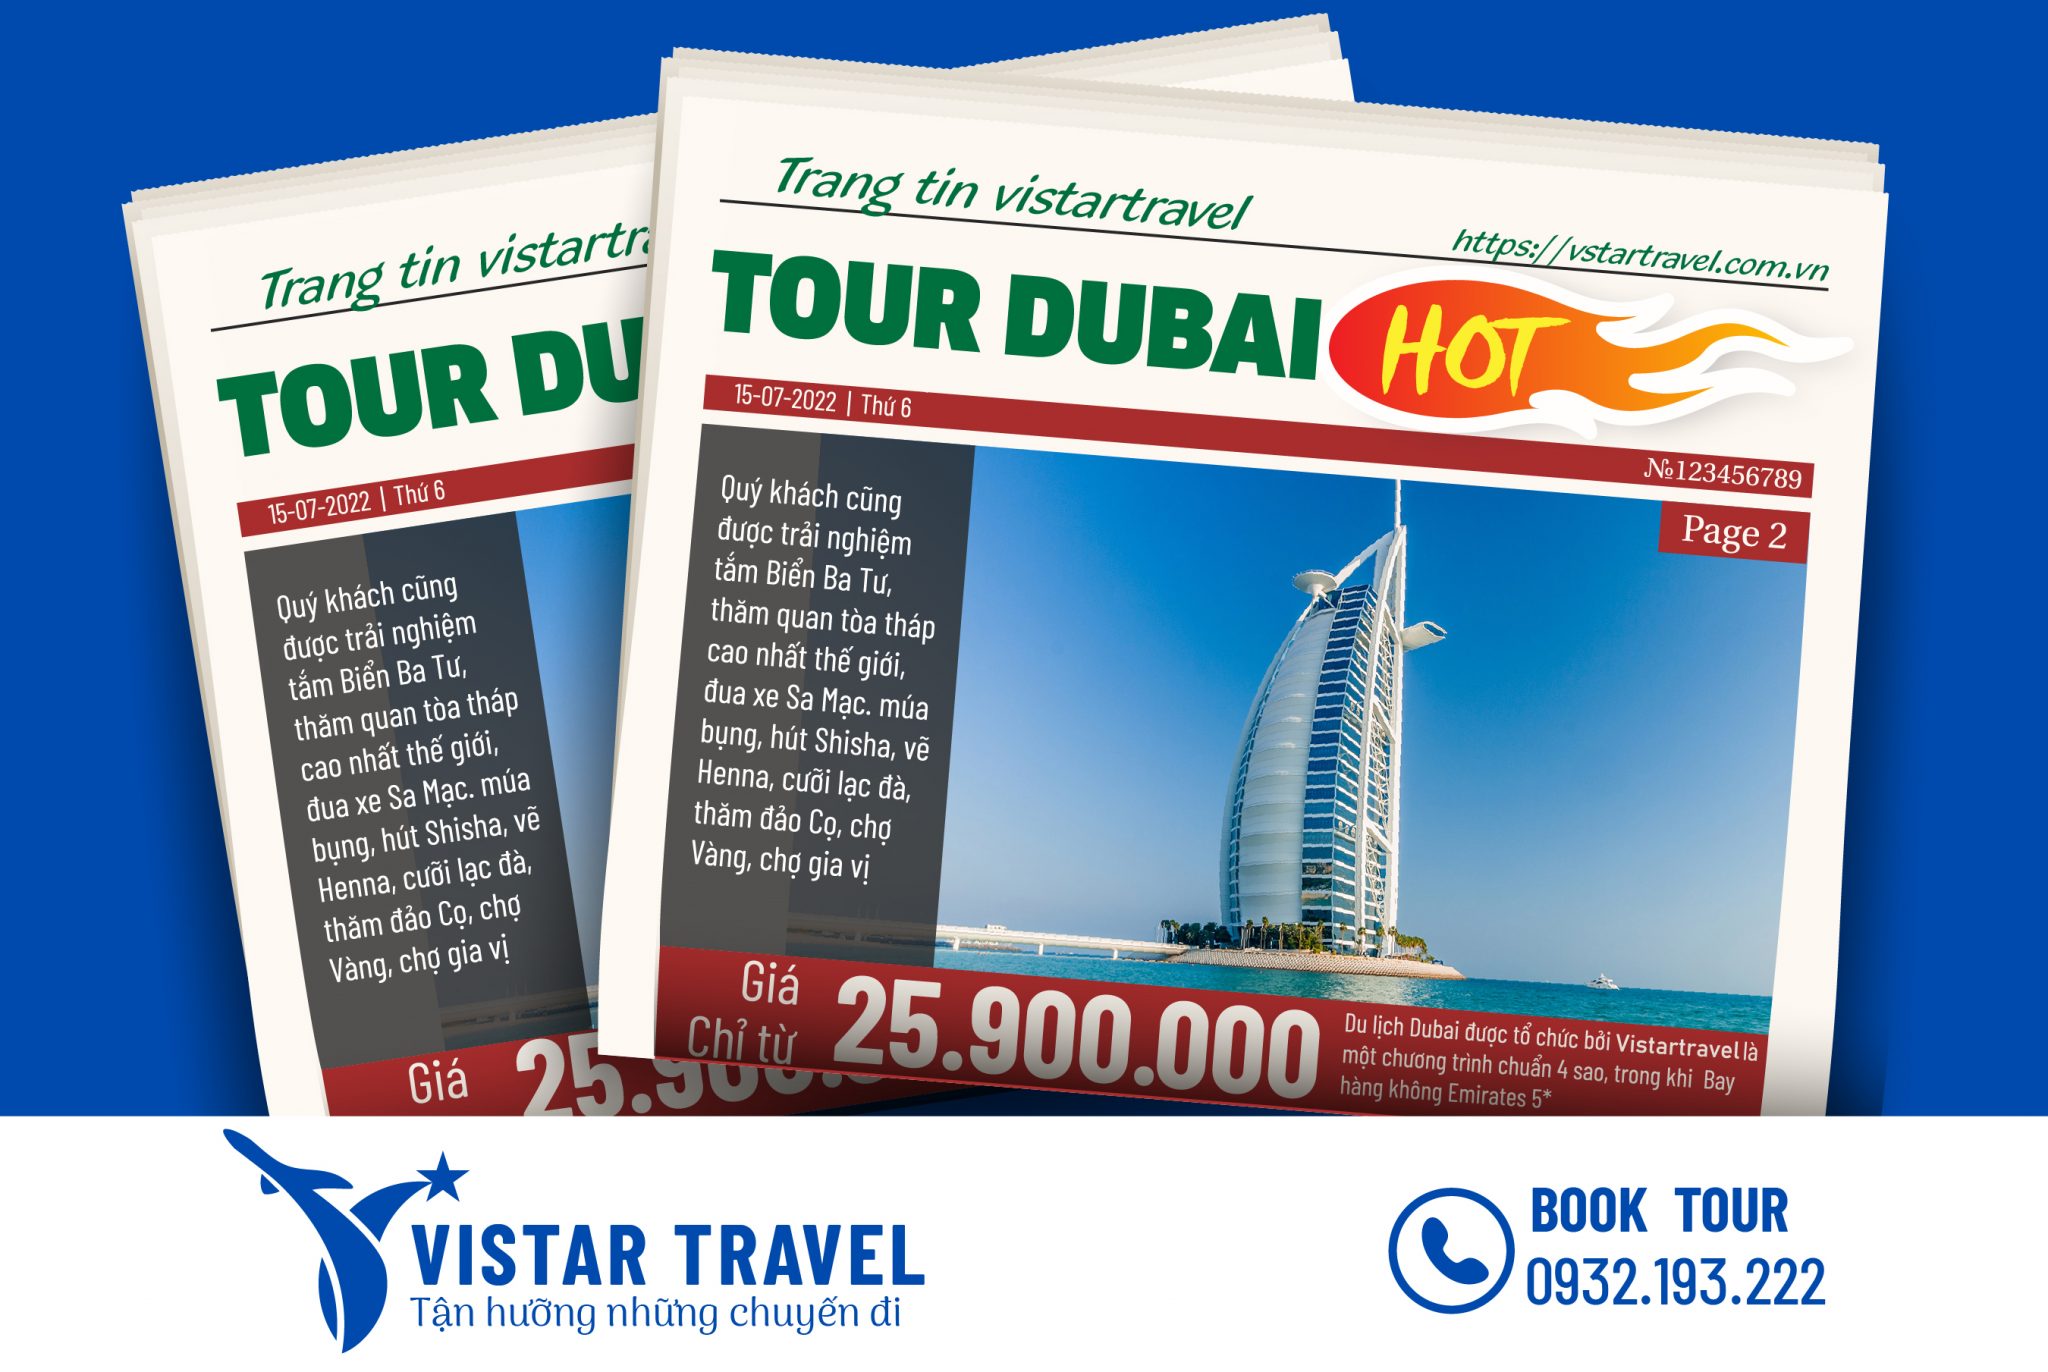 Hành trình khám phá Dubai Abu Dhabi với những khung cảnh hoành tráng, đầy màu sắc và kiến trúc hiện đại sẽ là trải nghiệm đáng nhớ cho bất kỳ ai yêu thích du lịch. Không chỉ tham quan các điểm đến nổi tiếng, bạn còn được tận hưởng những dịch vụ đẳng cấp, những trò chơi và trải nghiệm tuyệt vời. Hãy khám phá những hình ảnh đẹp ngỡ ngàng tại đây!